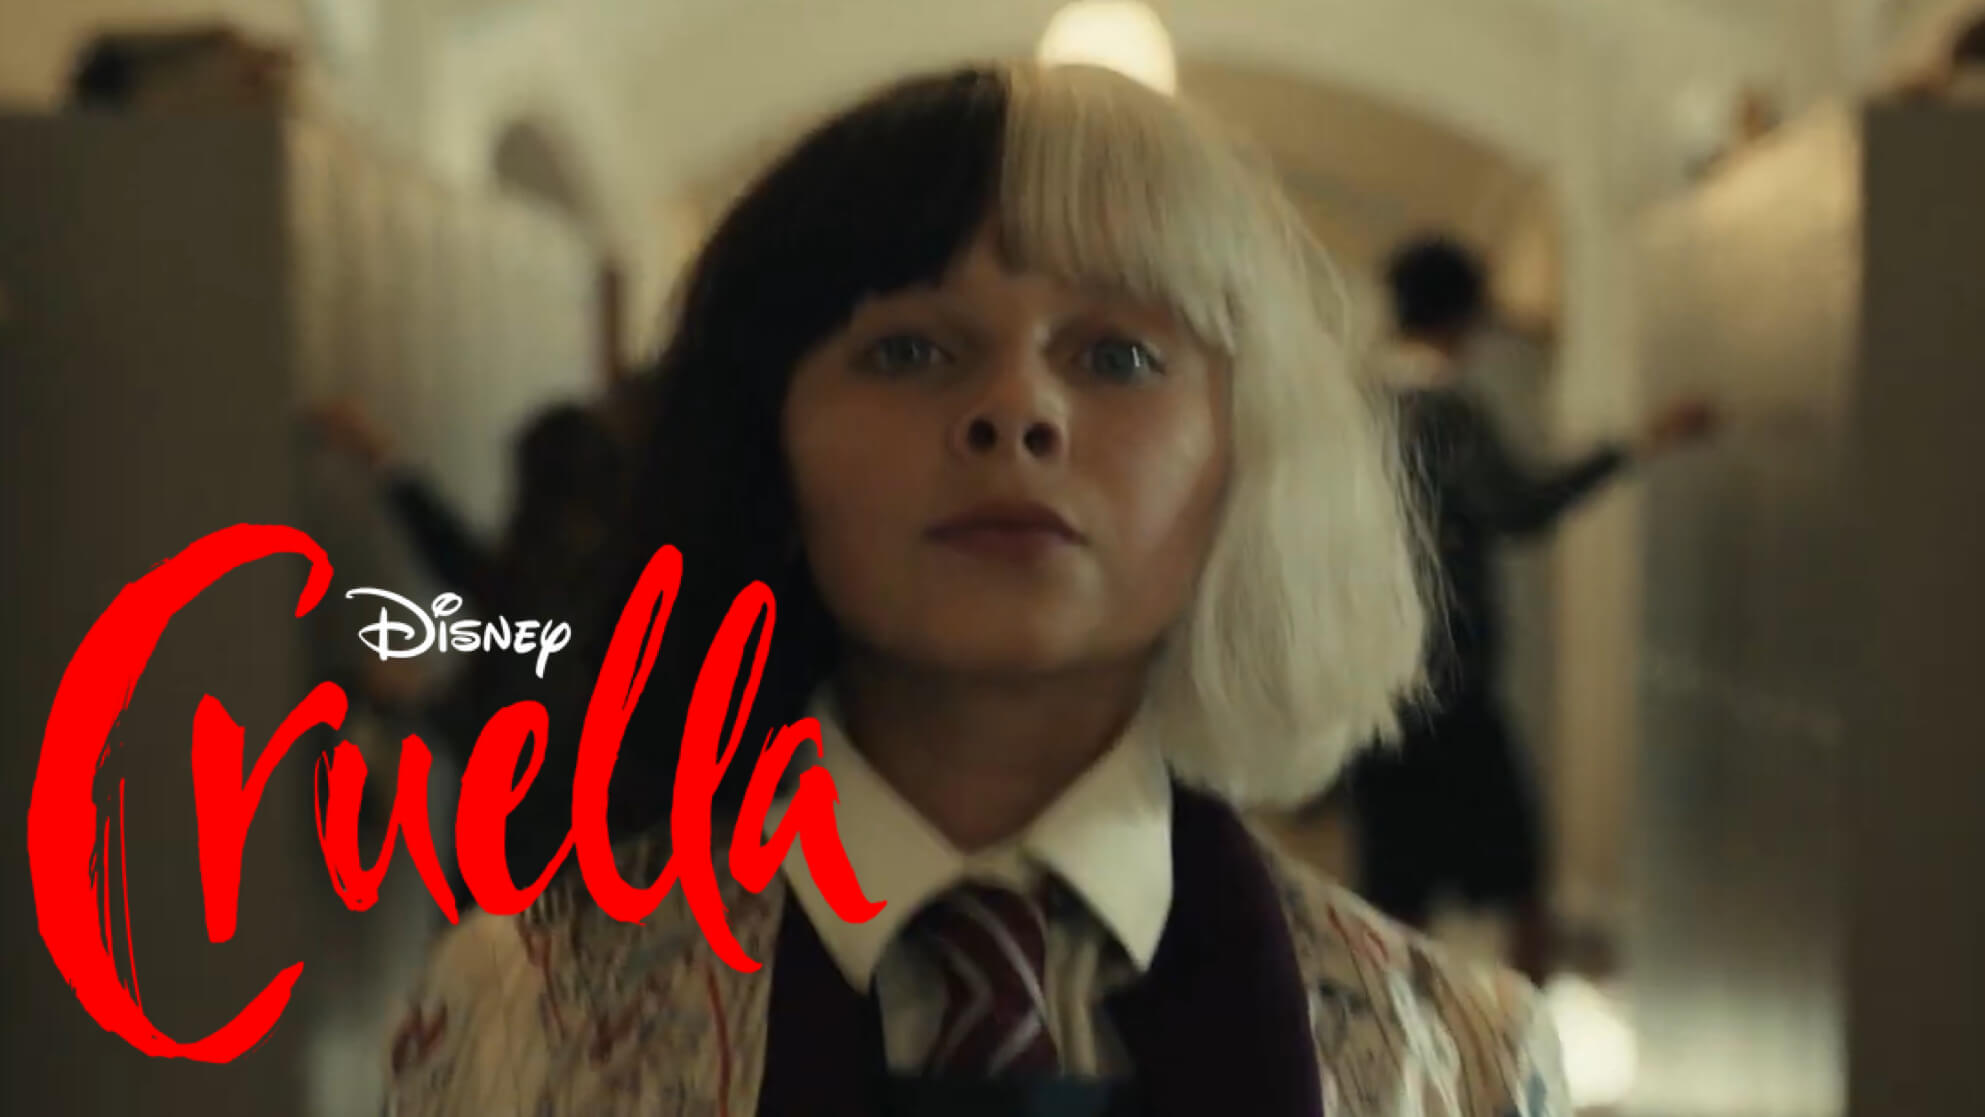 Meet a Young Estella in a New Special Look at ‘Cruella’